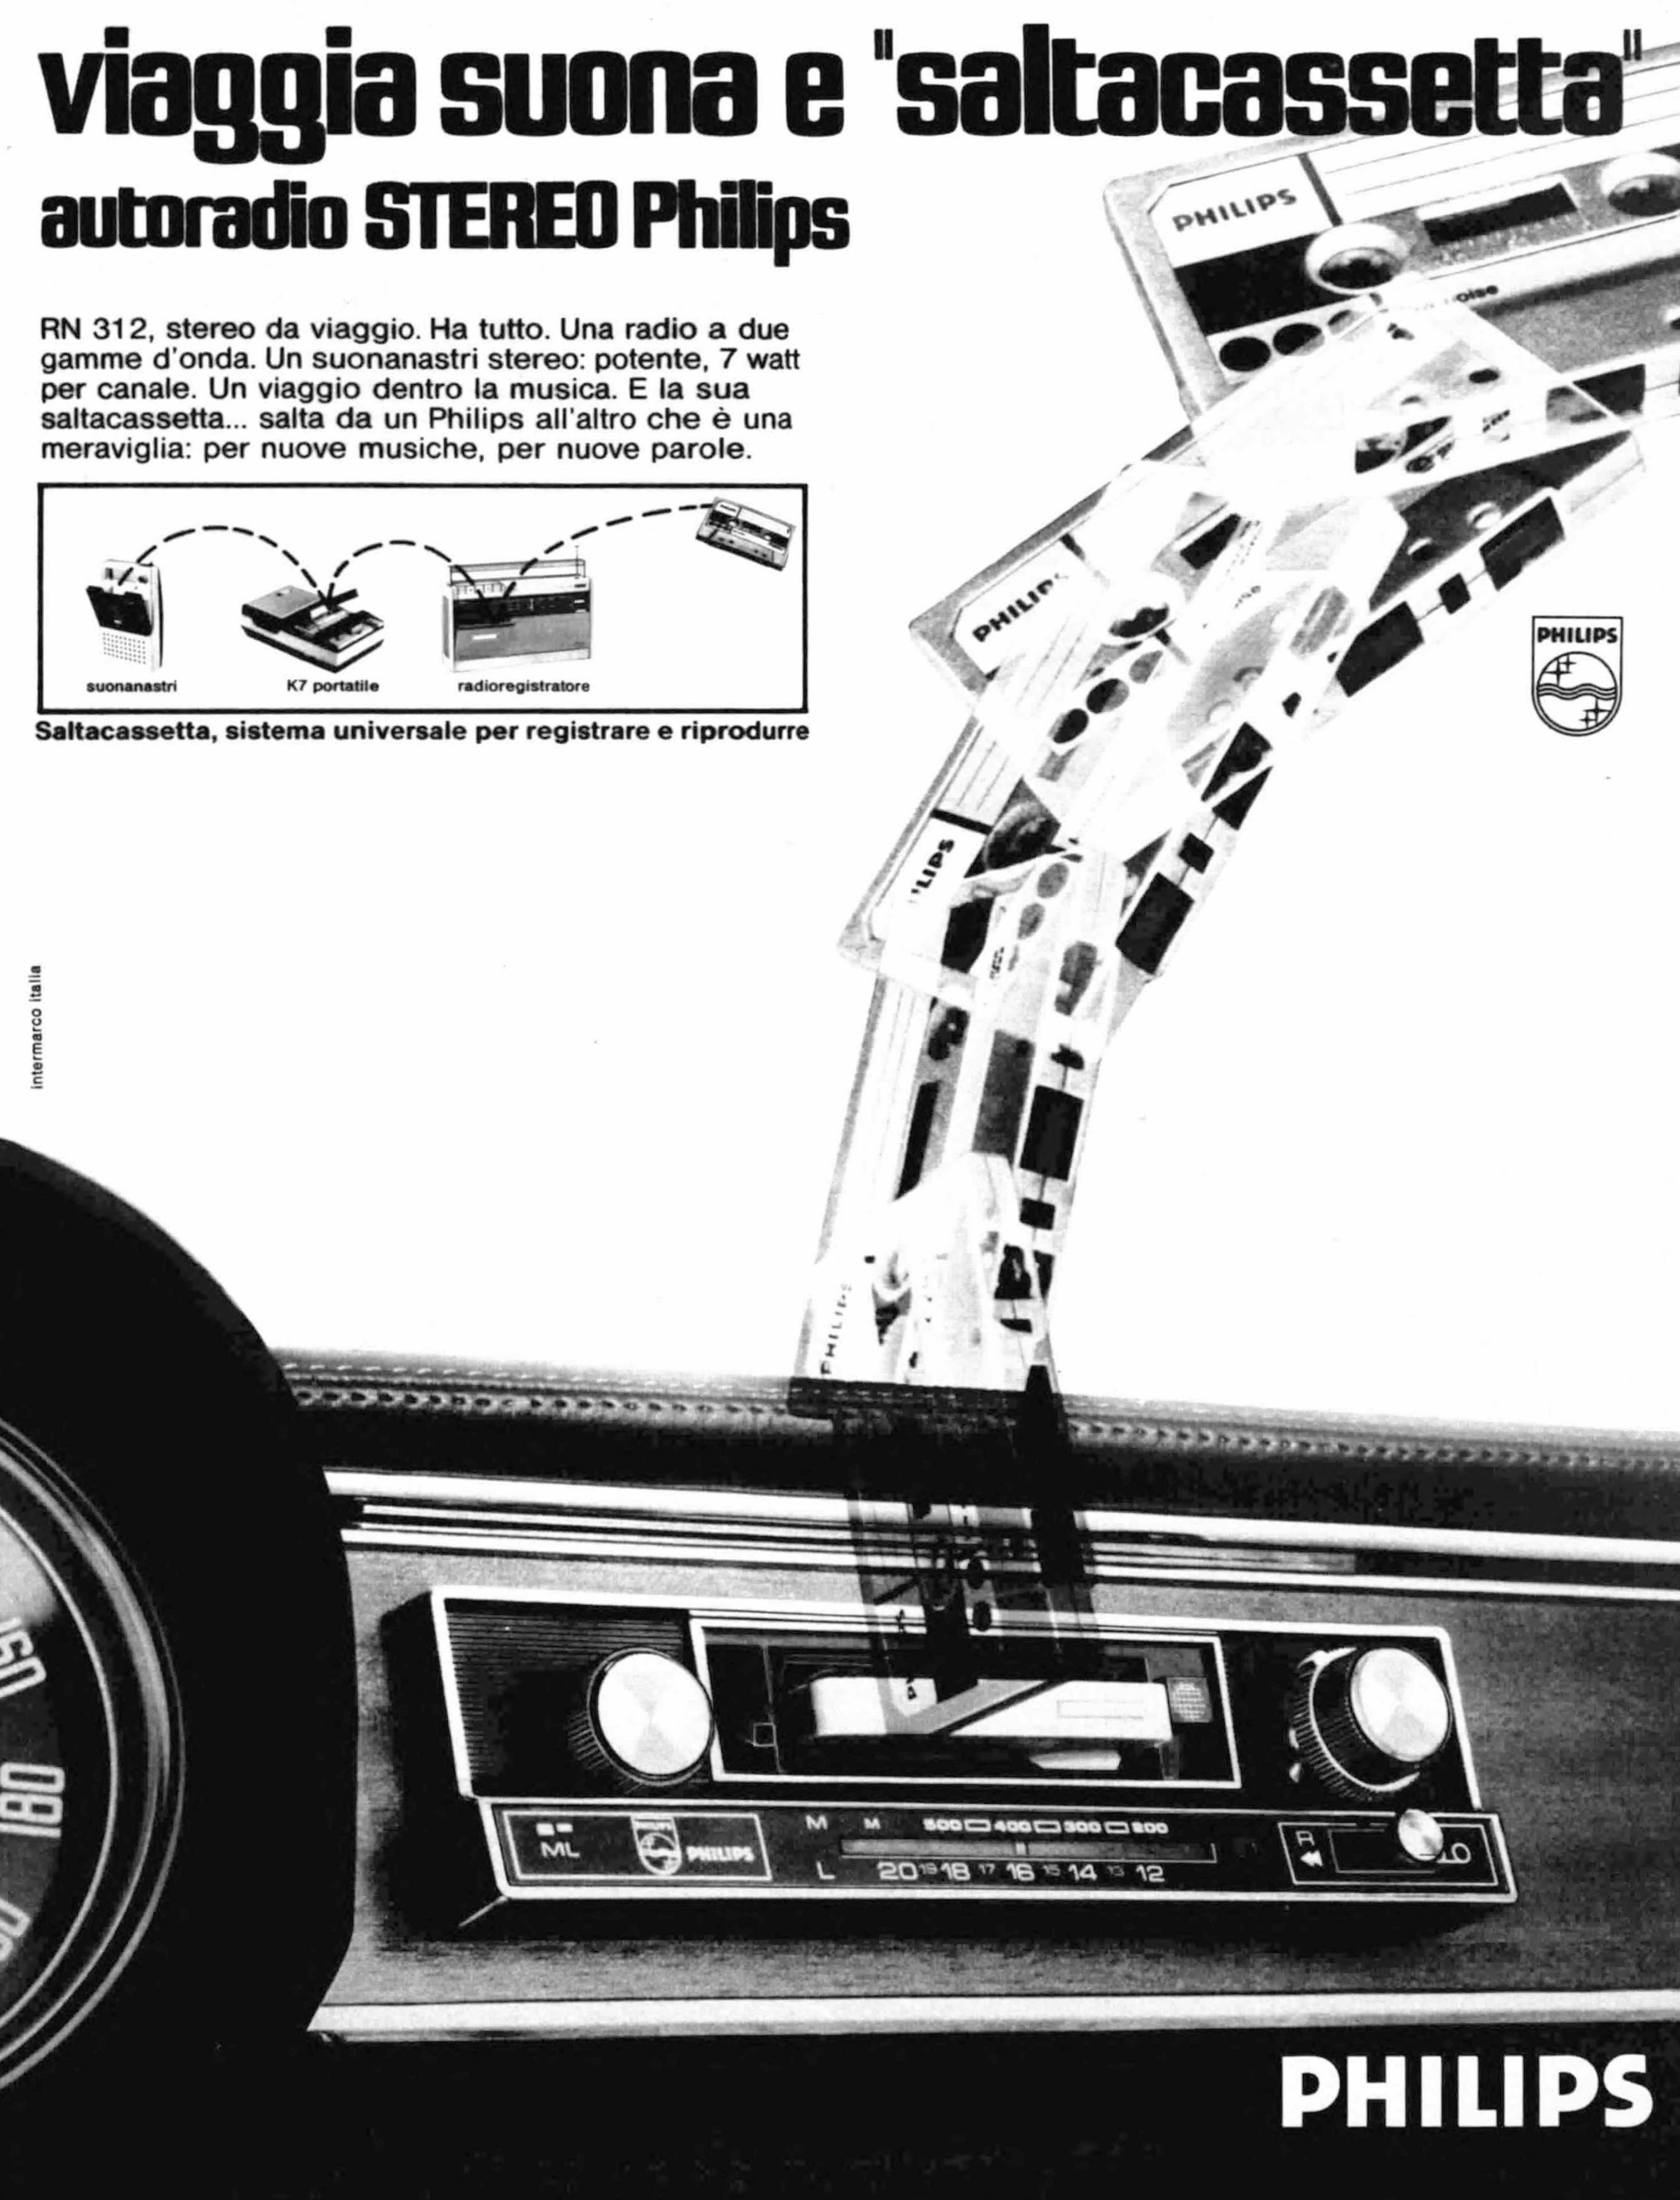 Philips 1972 34.jpg